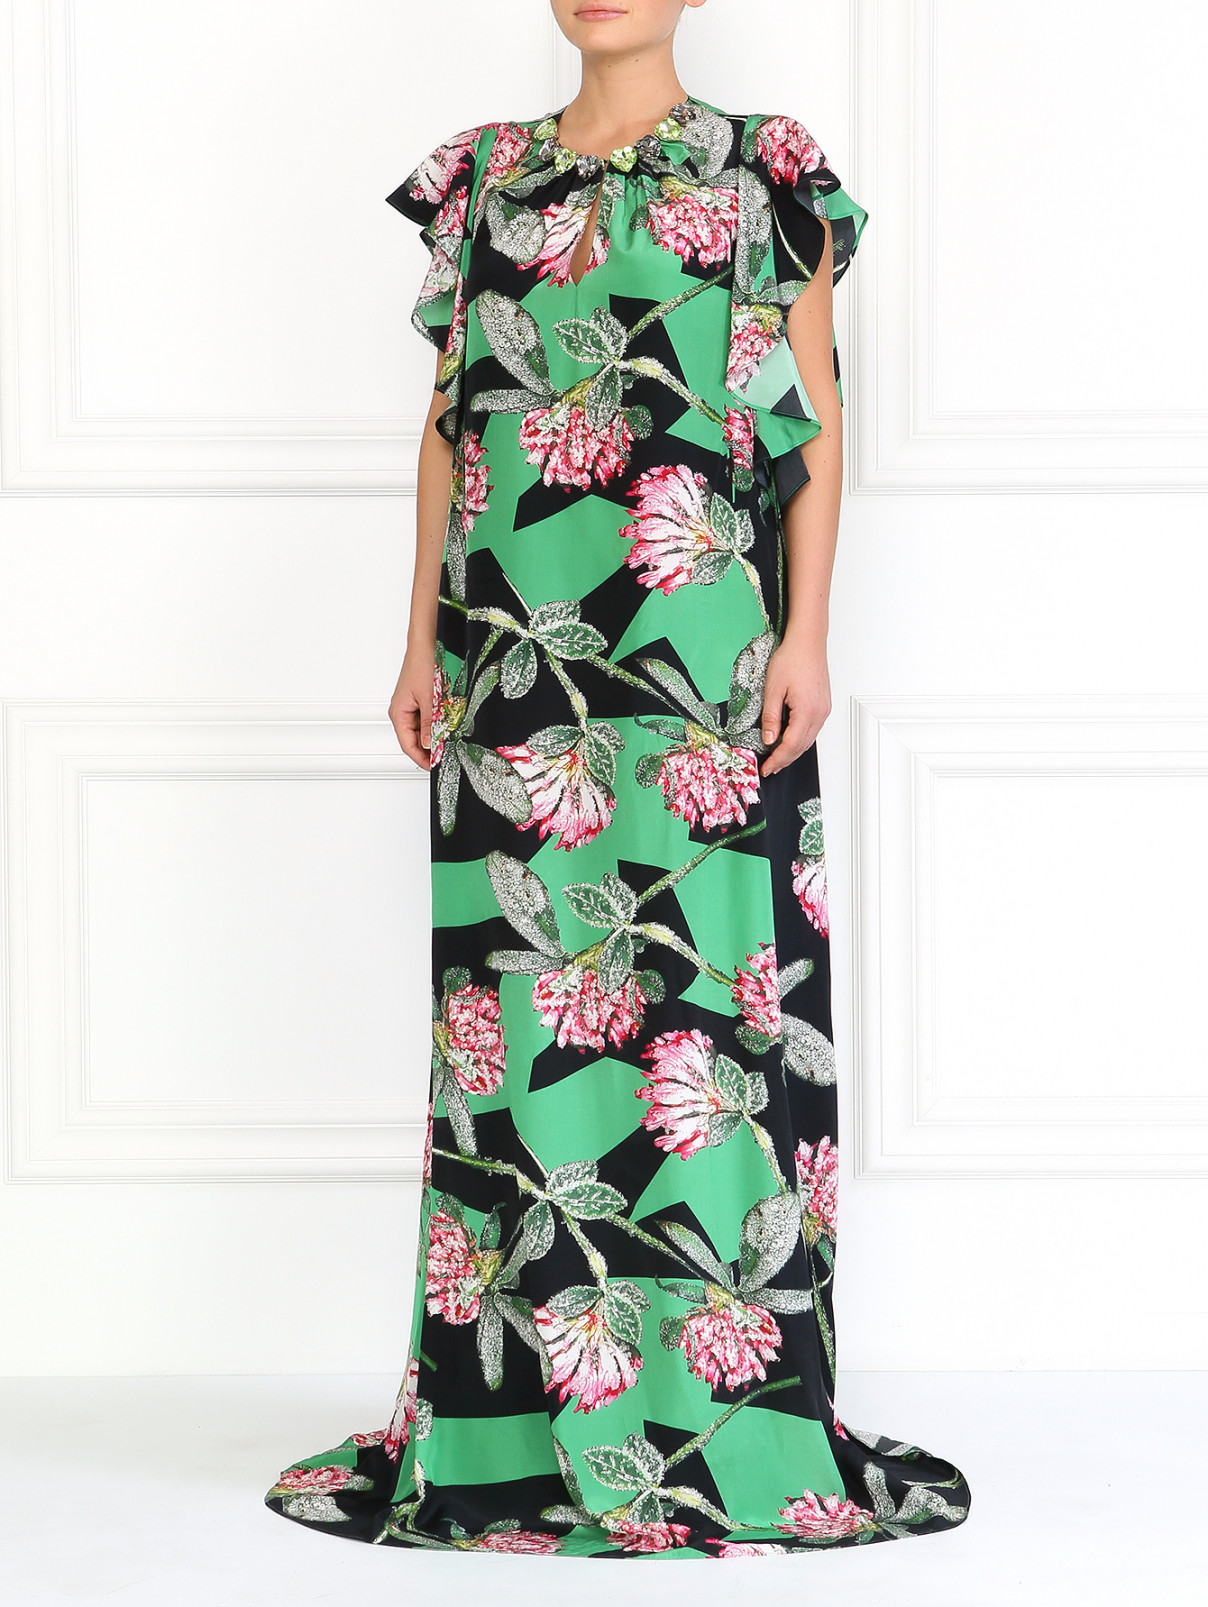 Шелковое платье с цветочным принтом JO NO FUI  –  Модель Общий вид  – Цвет:  Узор